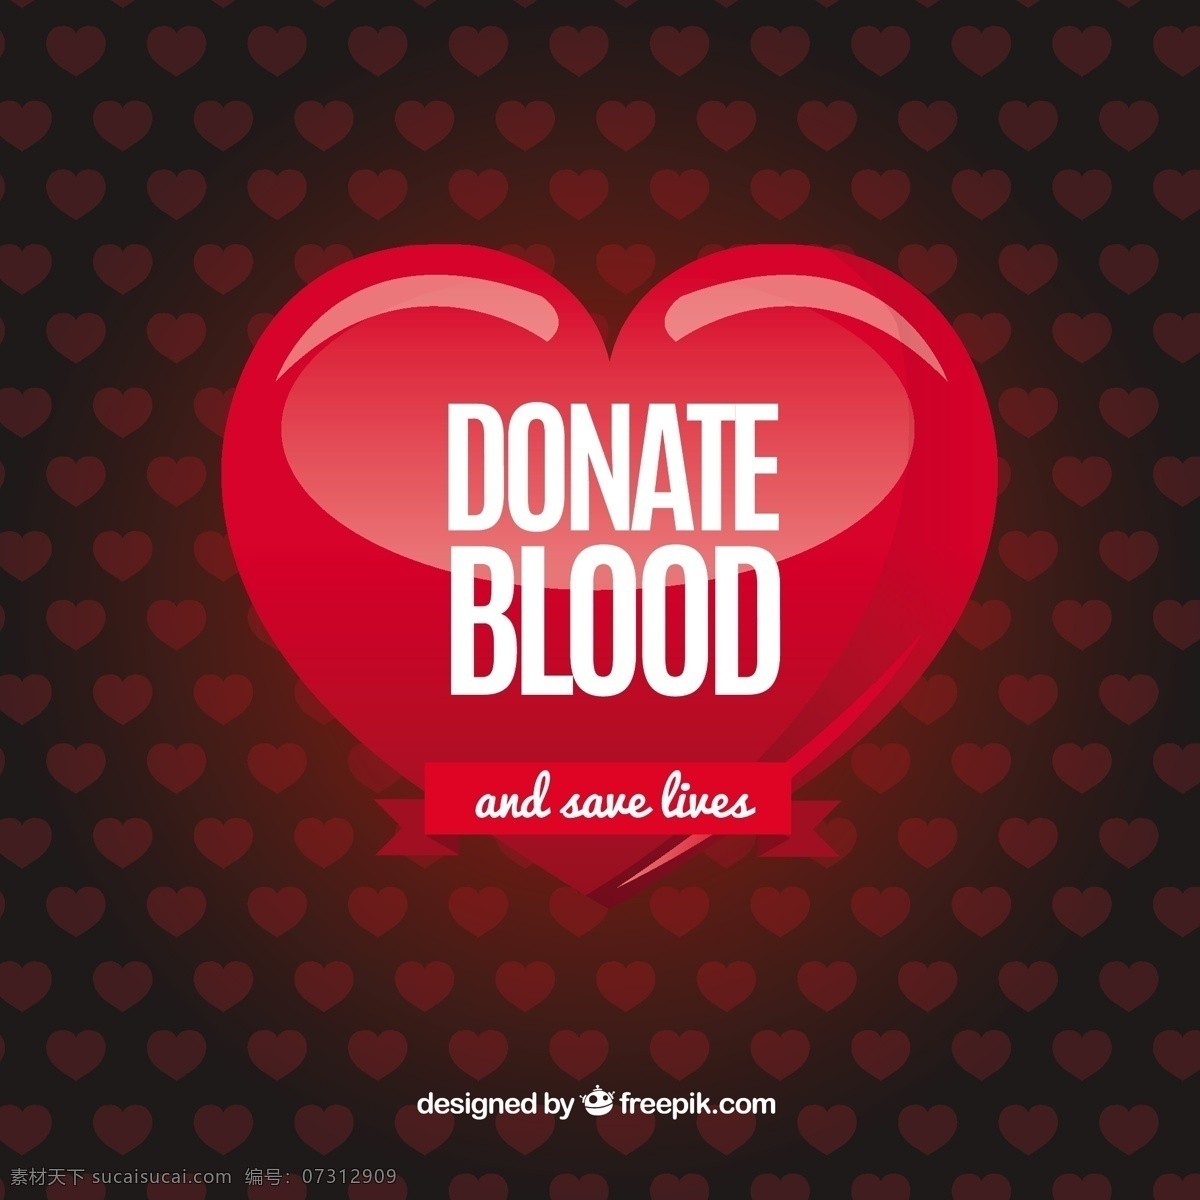 心脏 图案 捐献 血液 背景 心脏图案 捐献血液